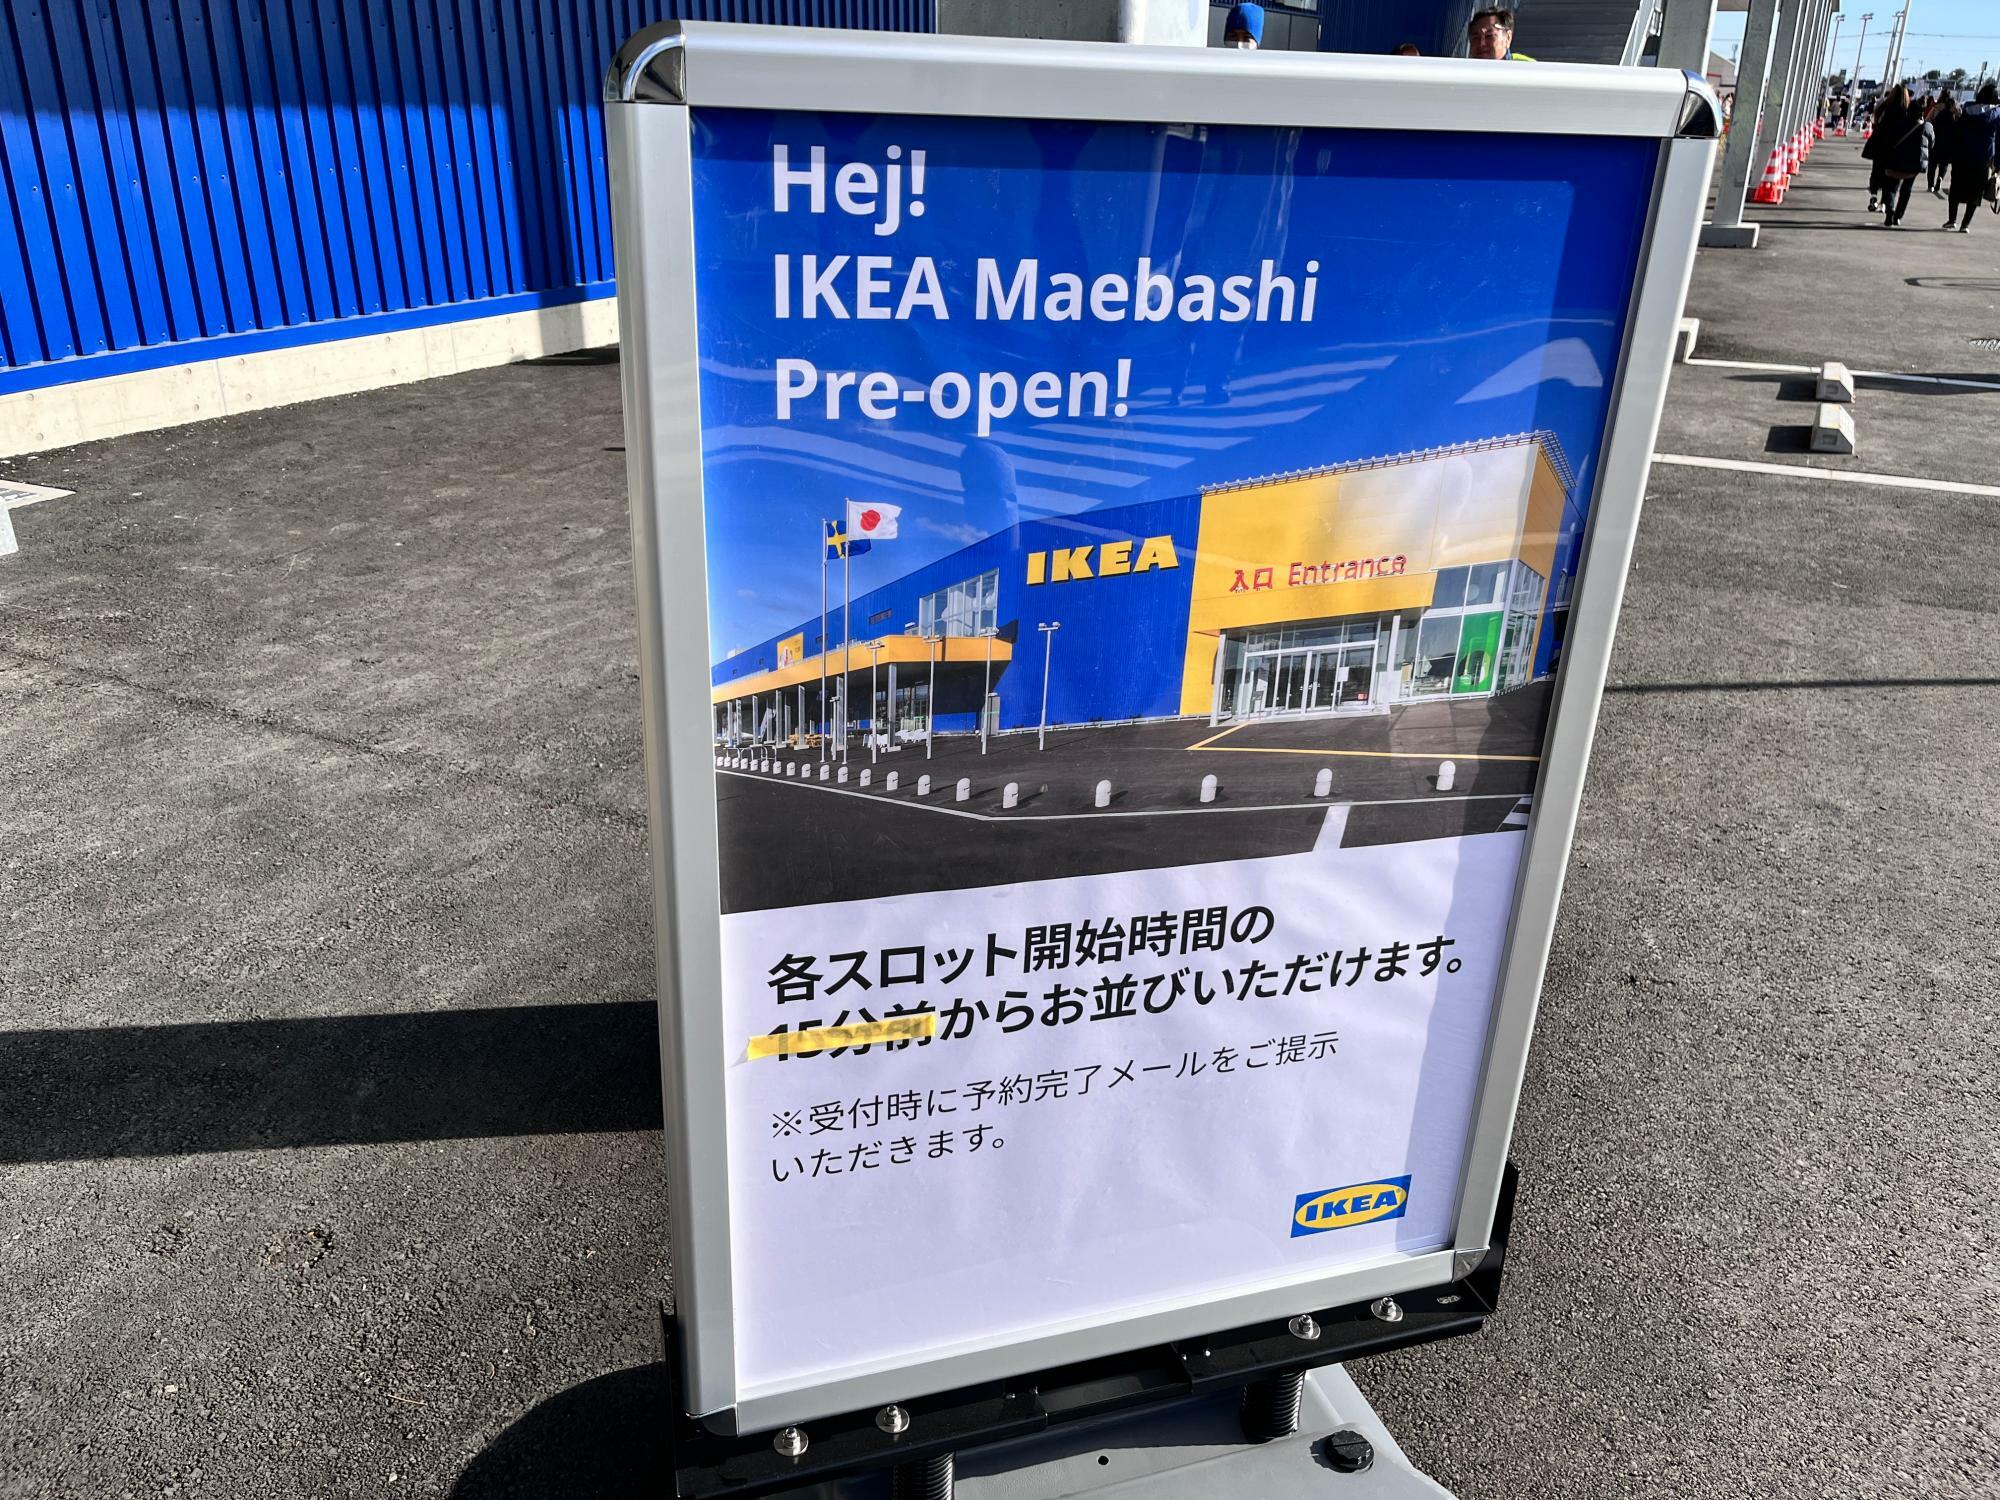 「IKEA前橋」プレオープン告知の看板